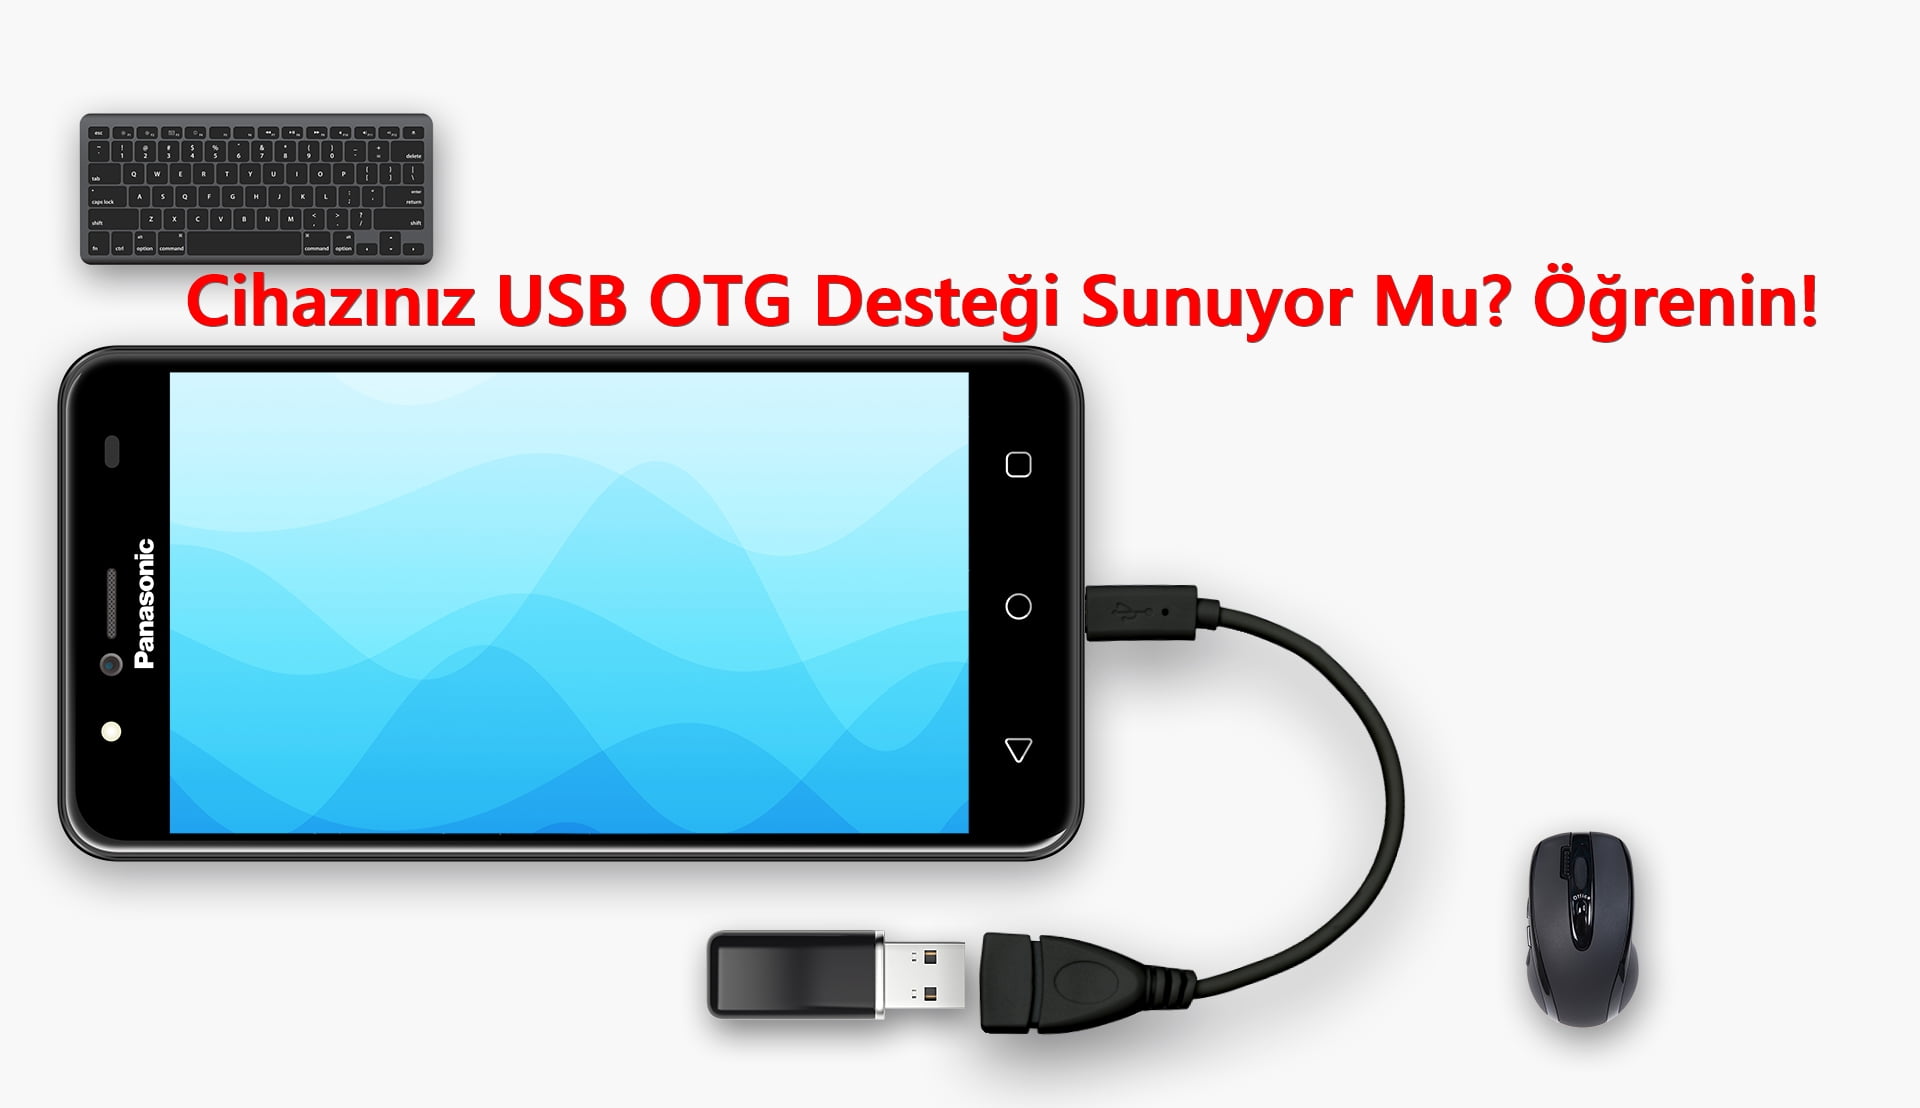 Cihazınız USB OTG Desteği Sunuyor Mu? Nasıl Öğrenilir?